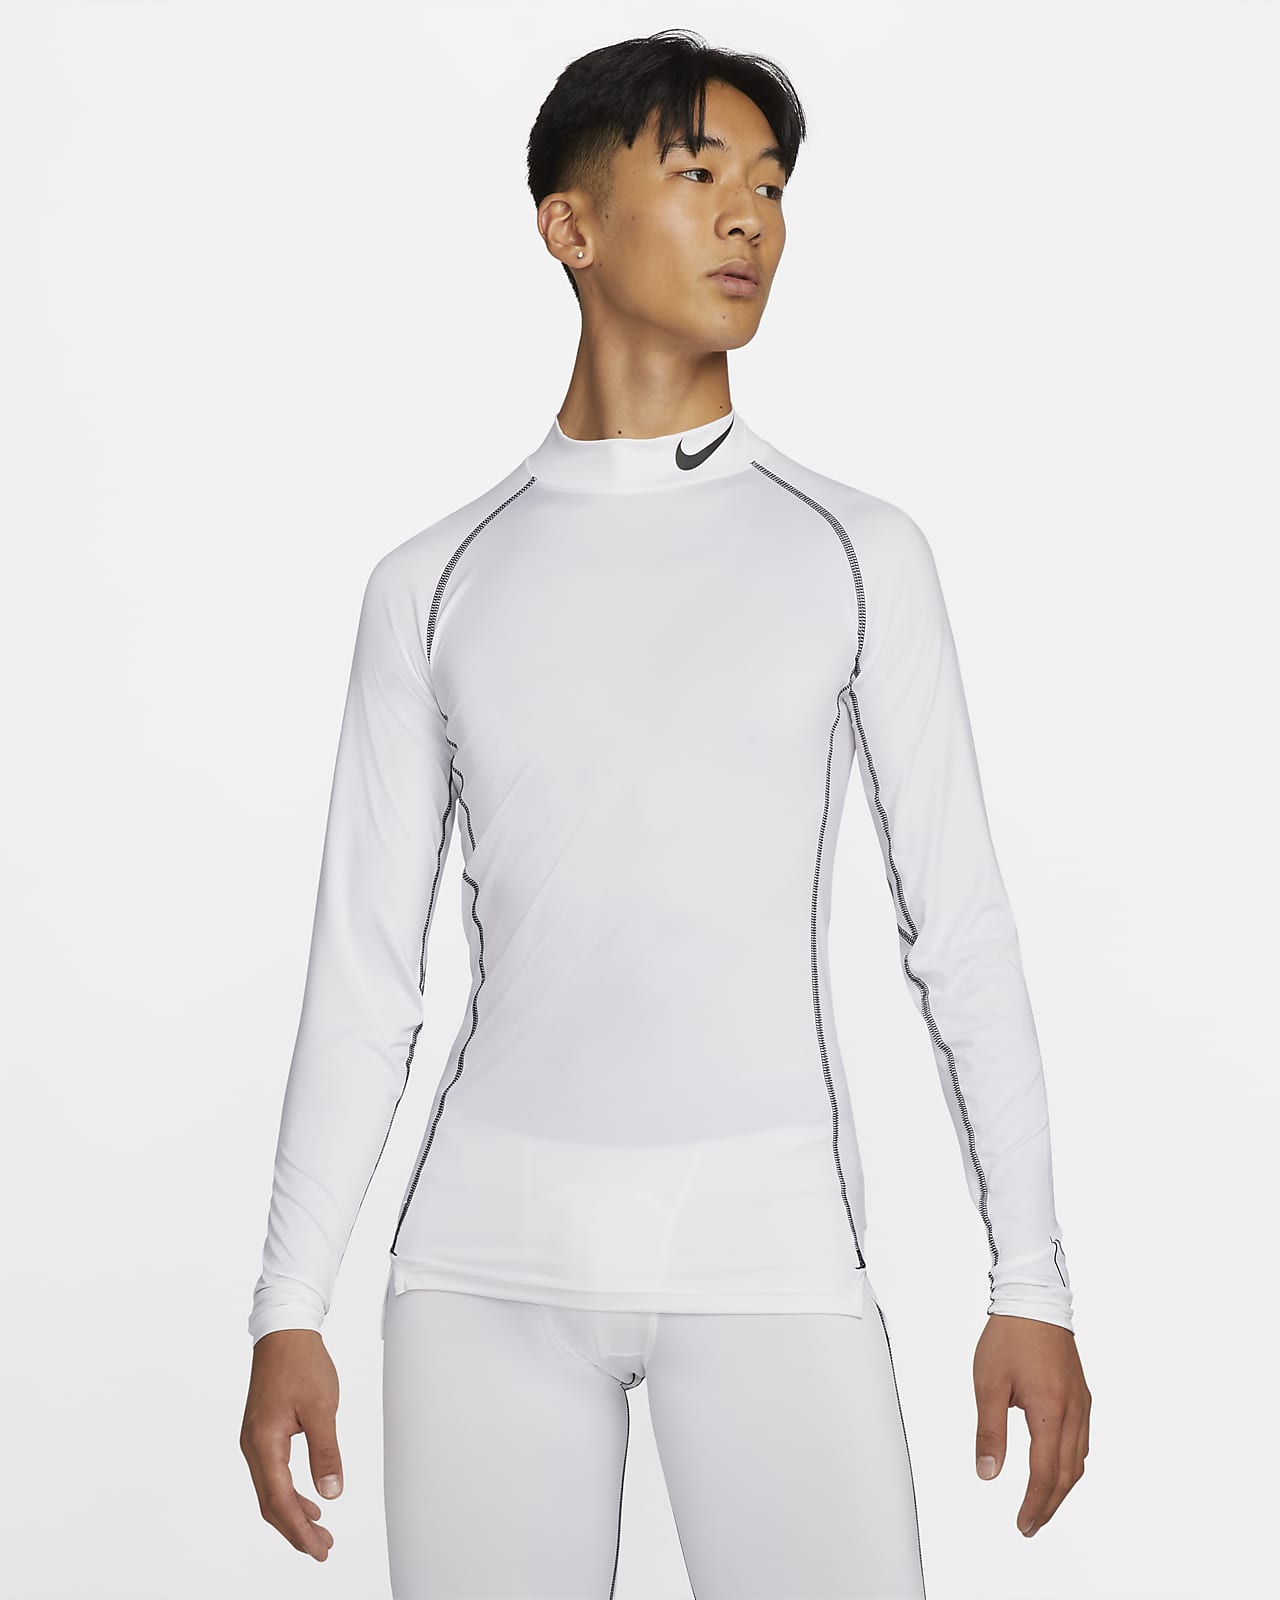 Nike Pro Dri-FIT tettsittende langermet trøye for herrer